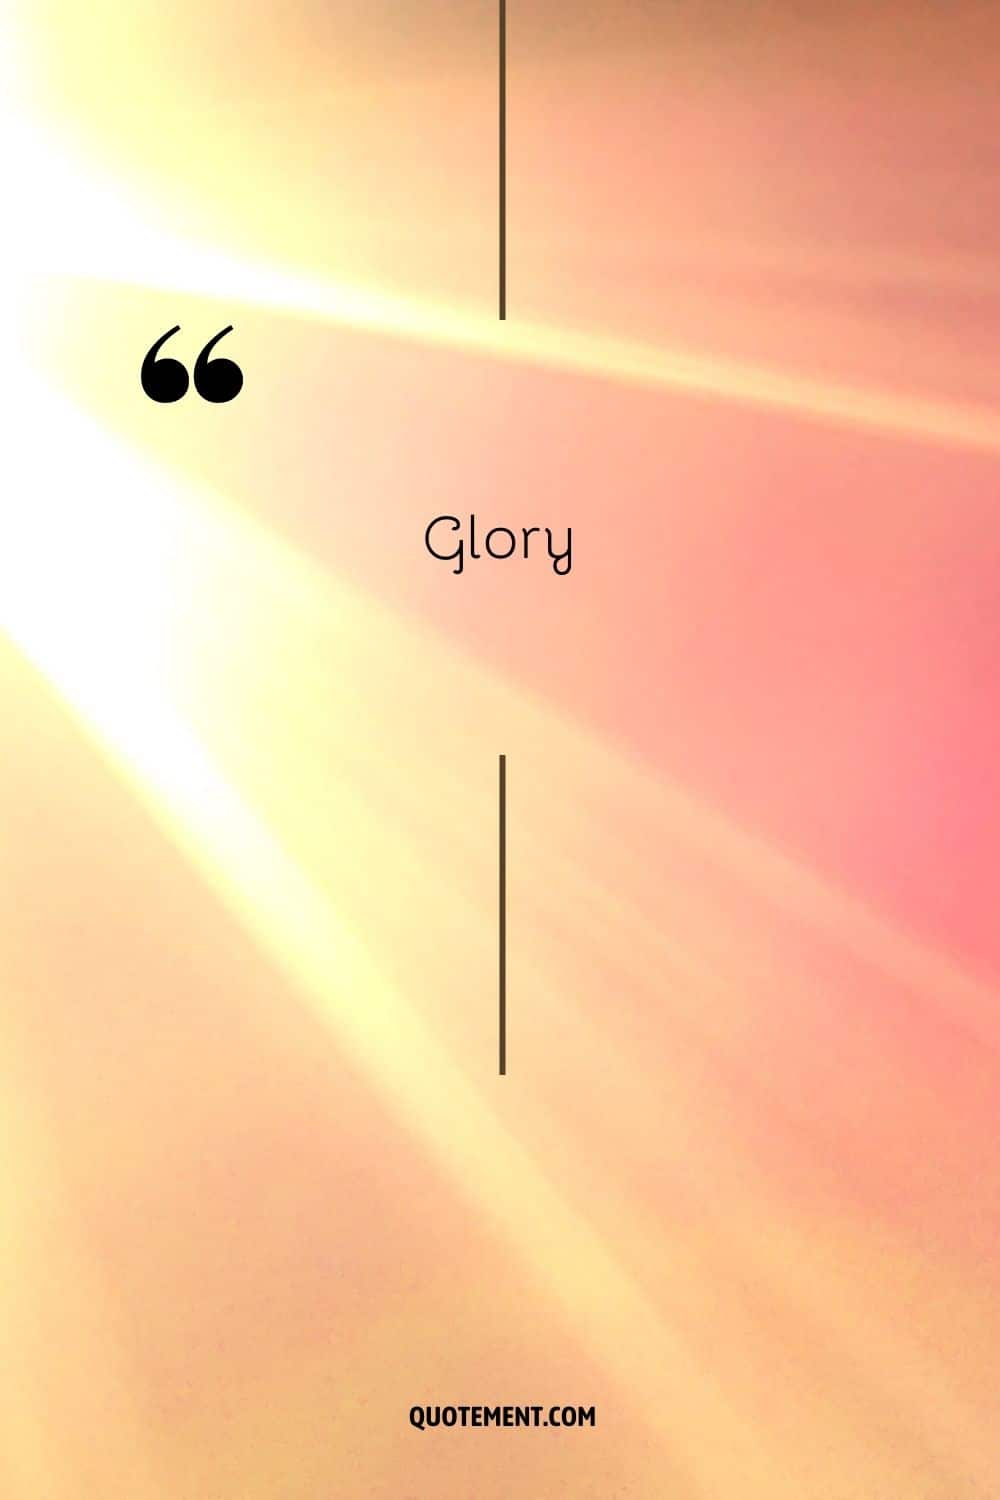 rayos de sol que representan la palabra gloria